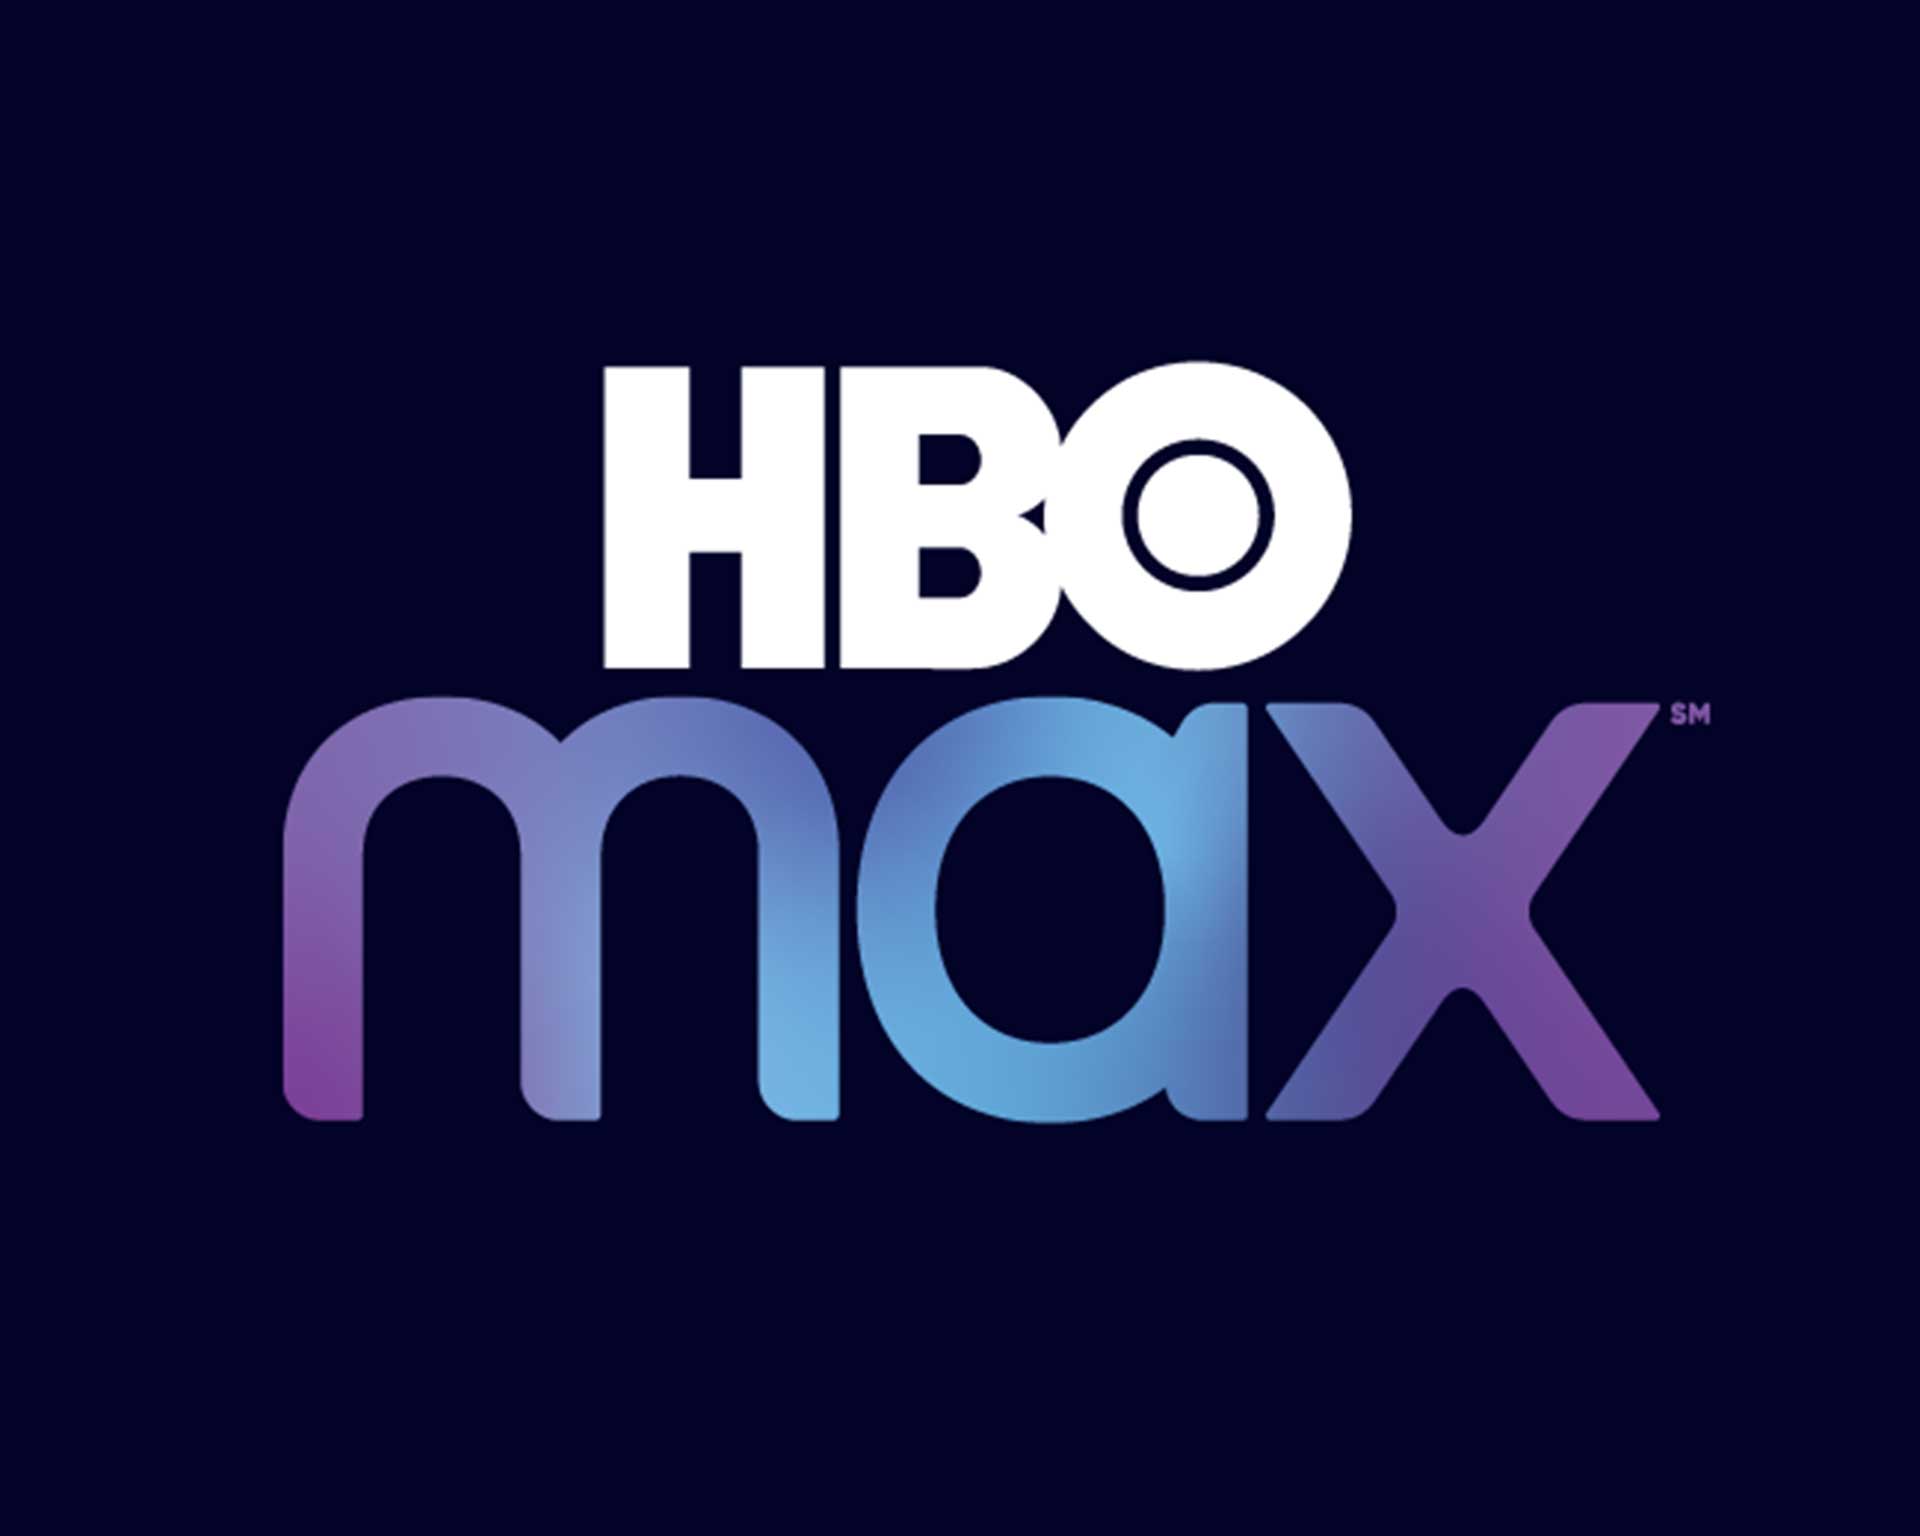 logo hbo max